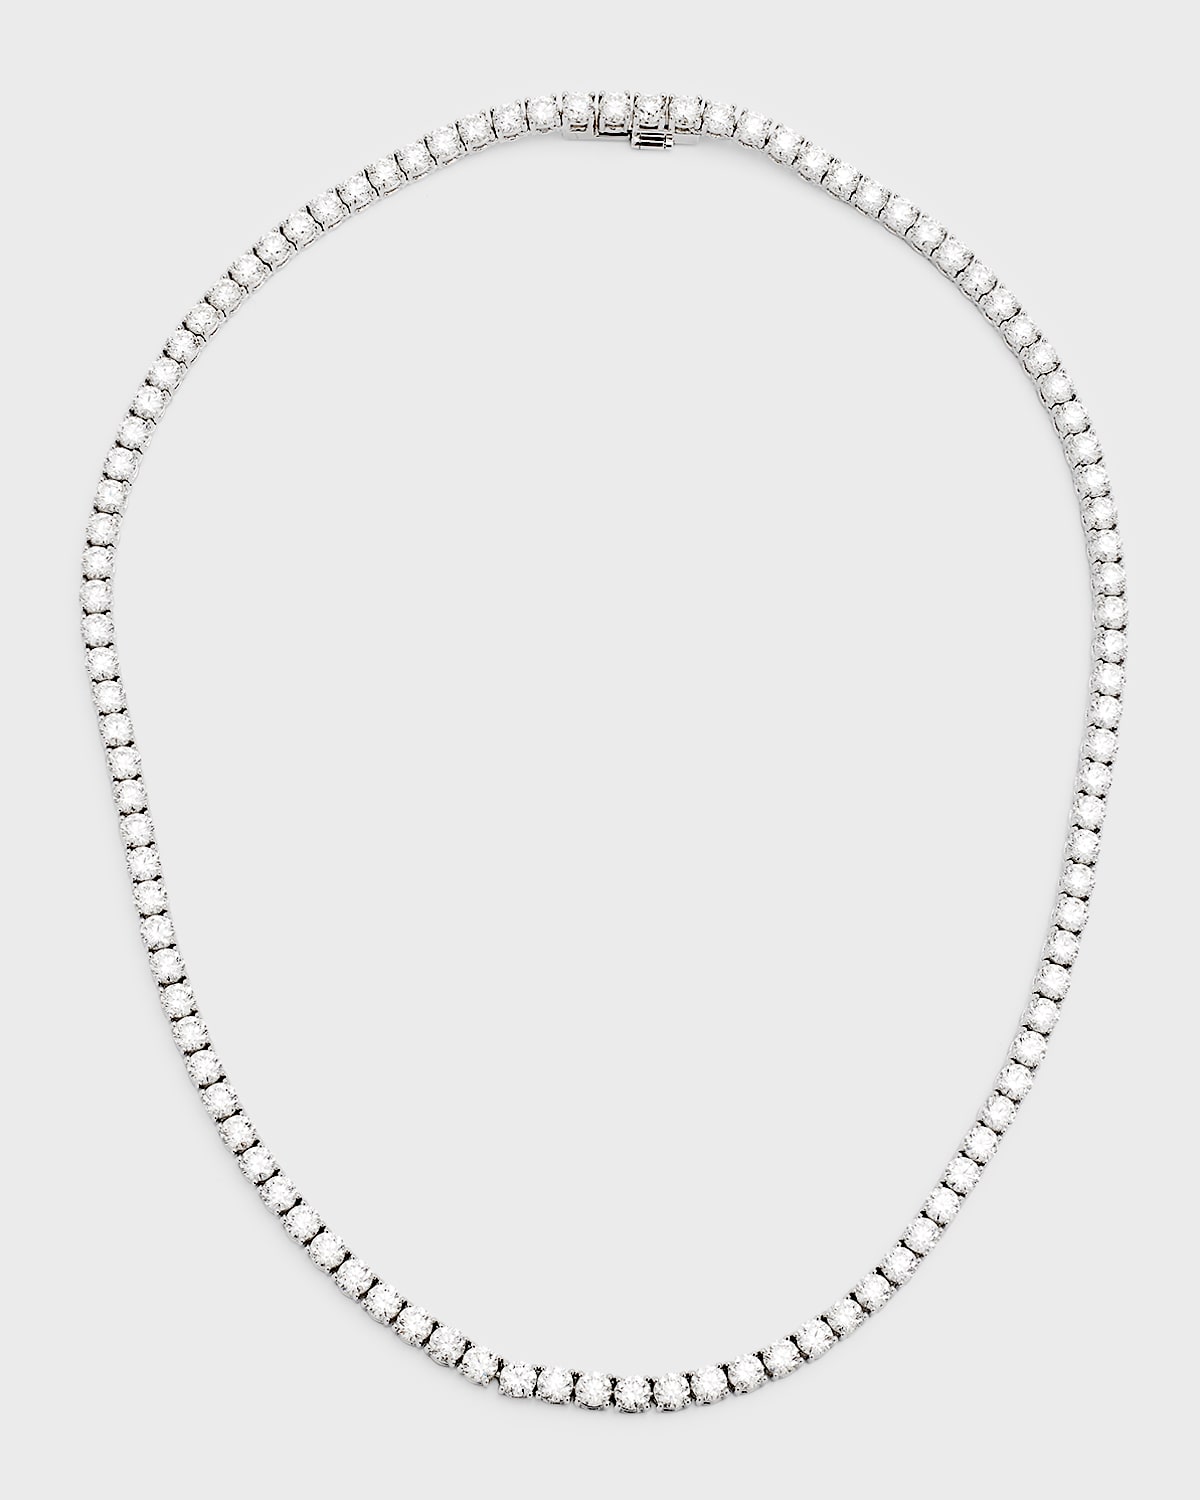 Neiman Marcus Diamonds 18k White Gold Round Diamond Tennis Necklace, 25.75tcw